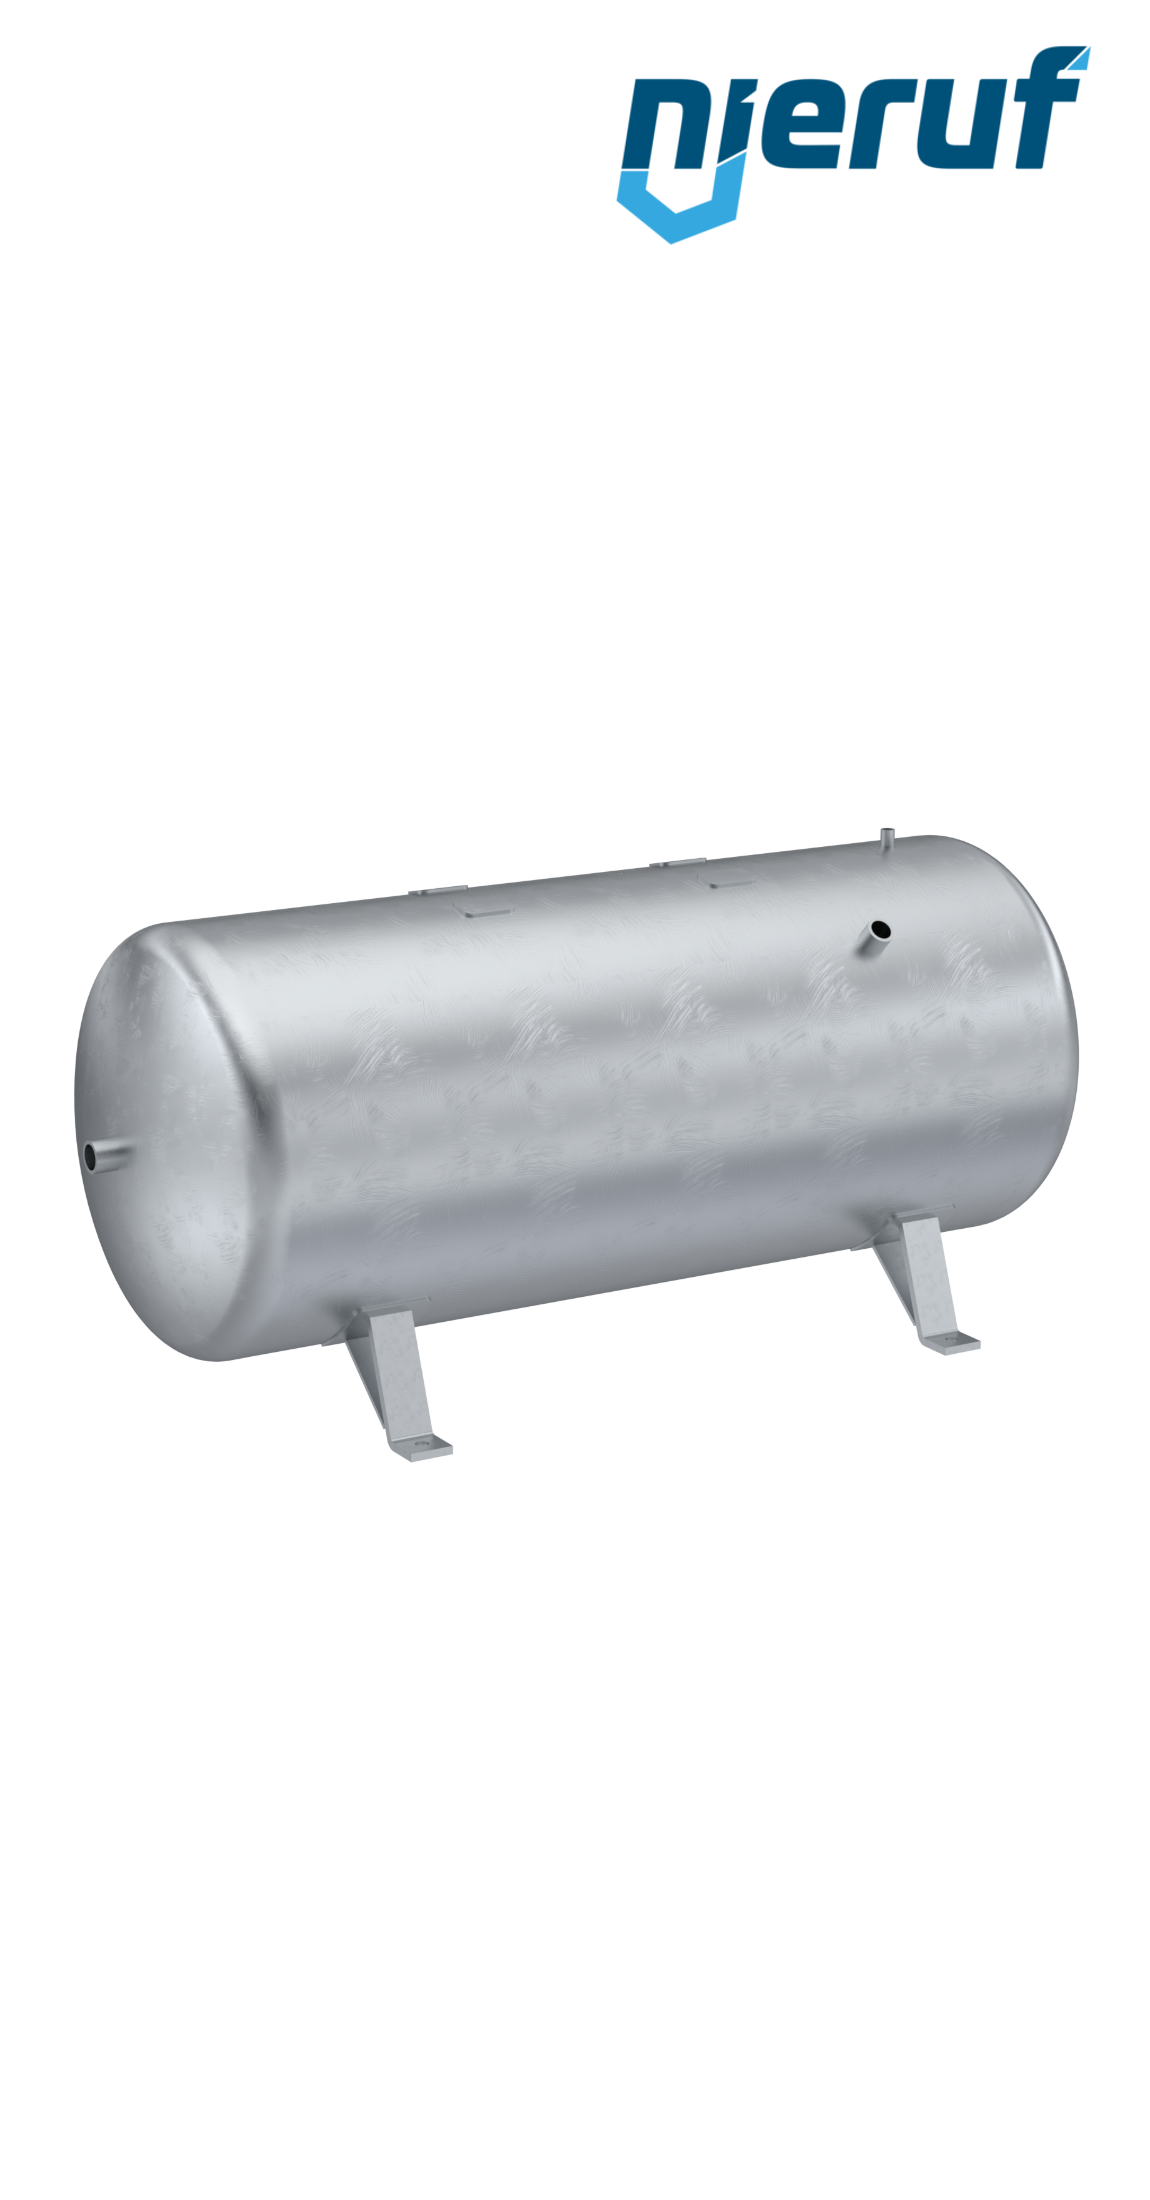 Serbatoio a pressione orizzontale BE01 750 litri, 0-16 bar, acciaio zincato